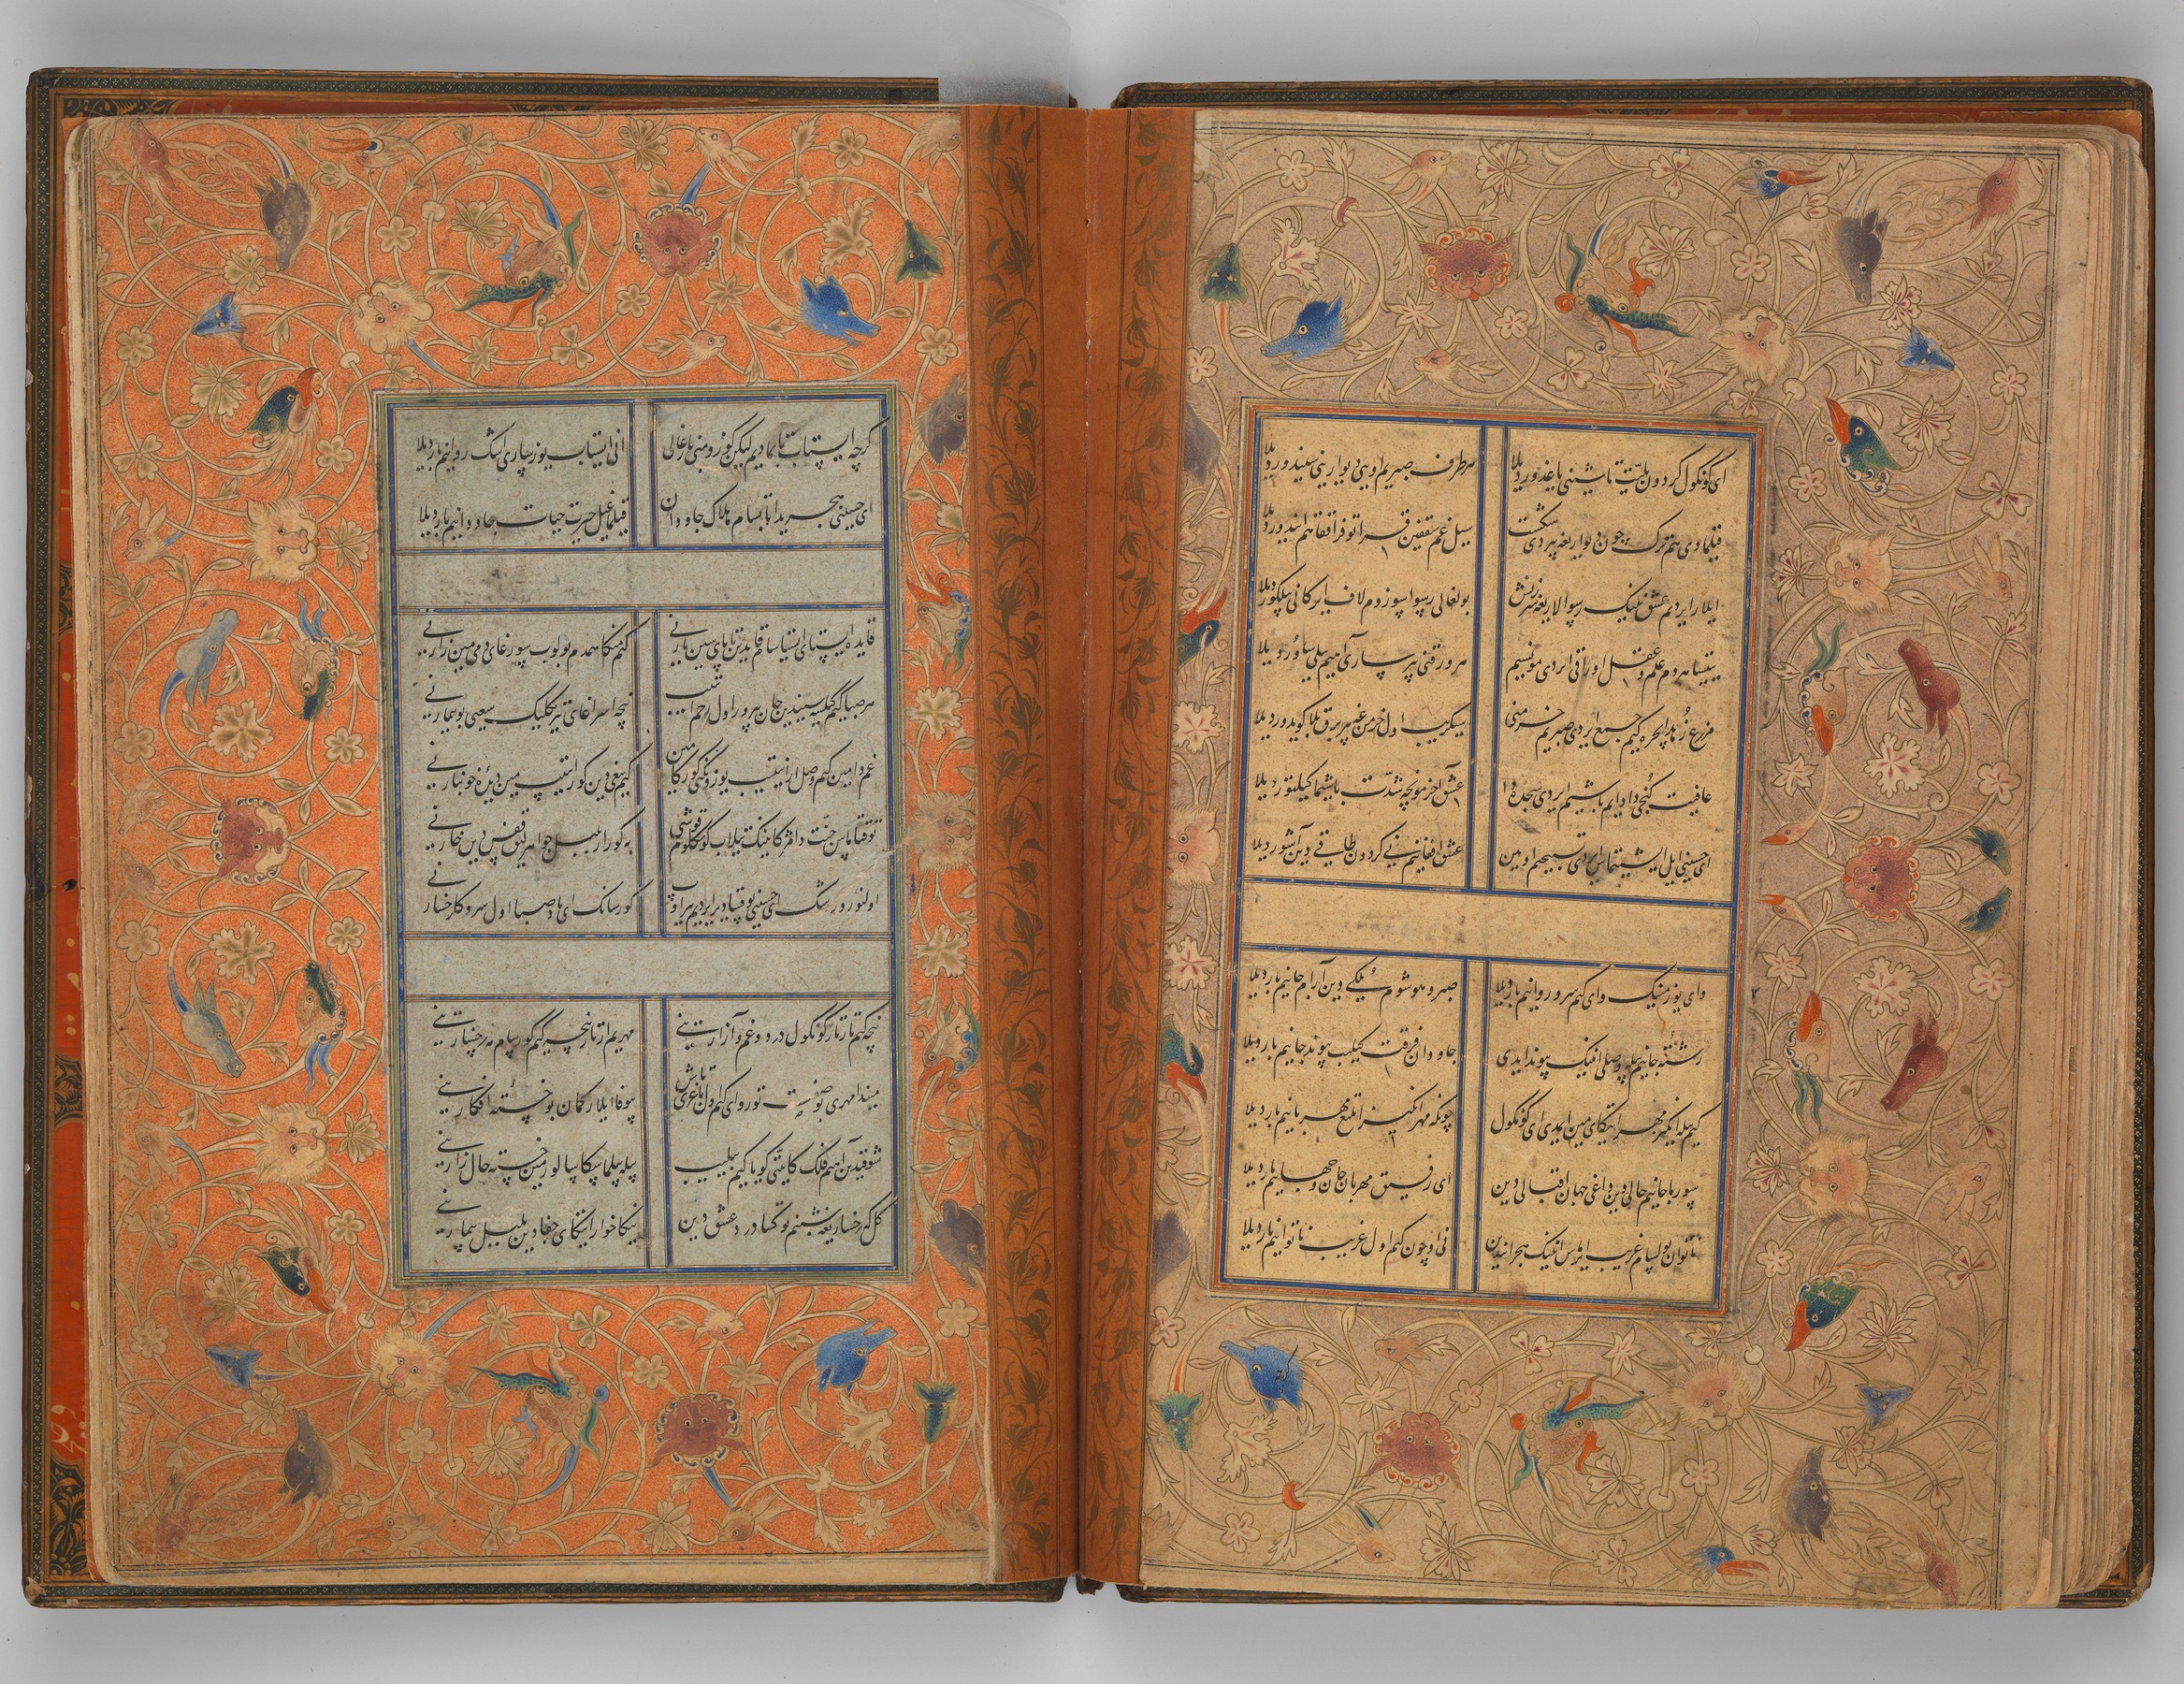 アル＝マシュハーディーの『ディーワーン』写本 | Divan of Sultan Husayn Baiqara - Met Museum